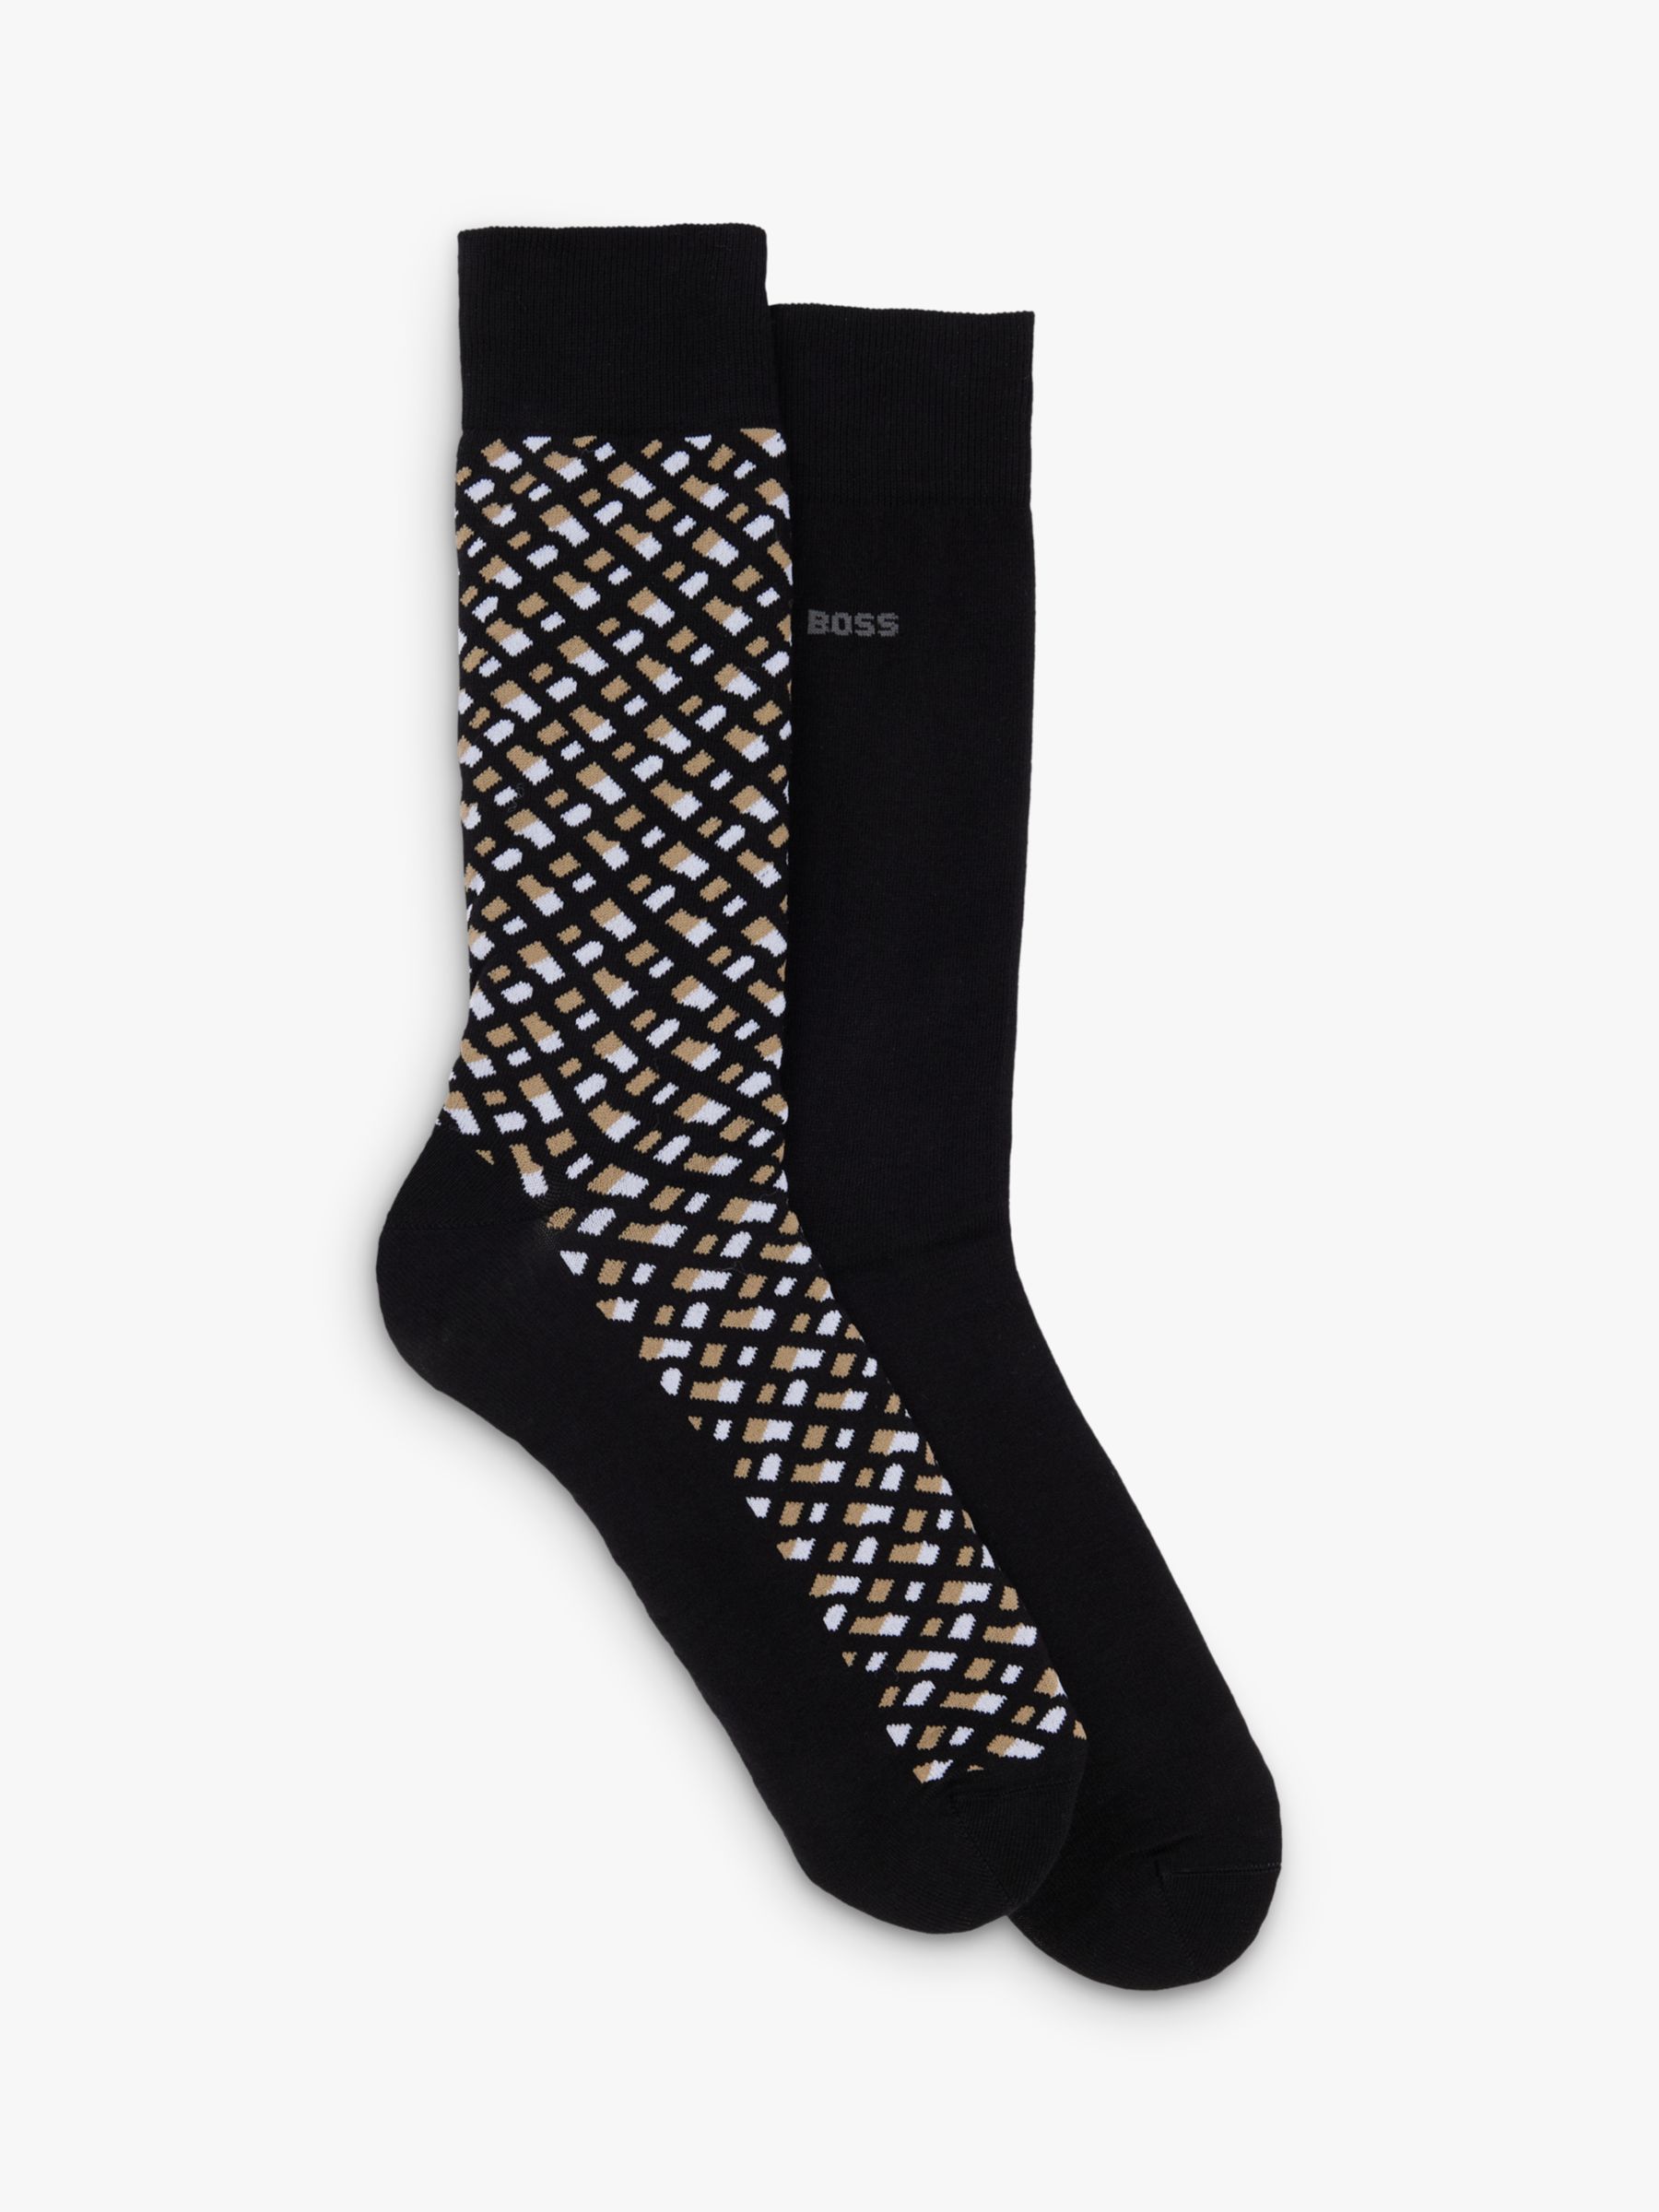 HUGO BOSS Monogram Socks, Pack of 2, Black/Multi, S-M